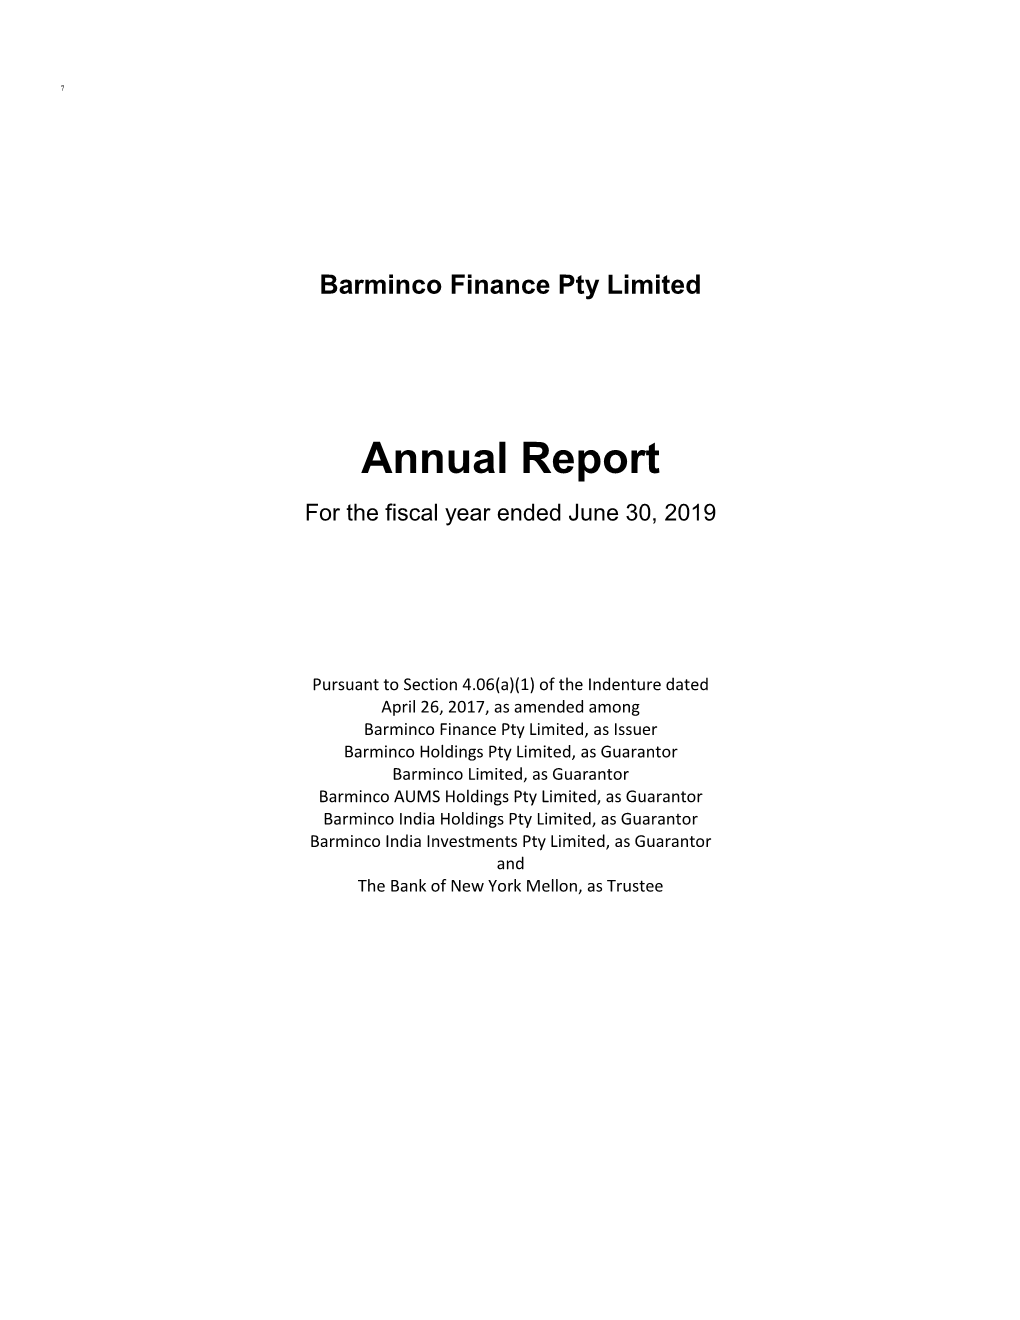 Barminco Annual Report 30 June 2019